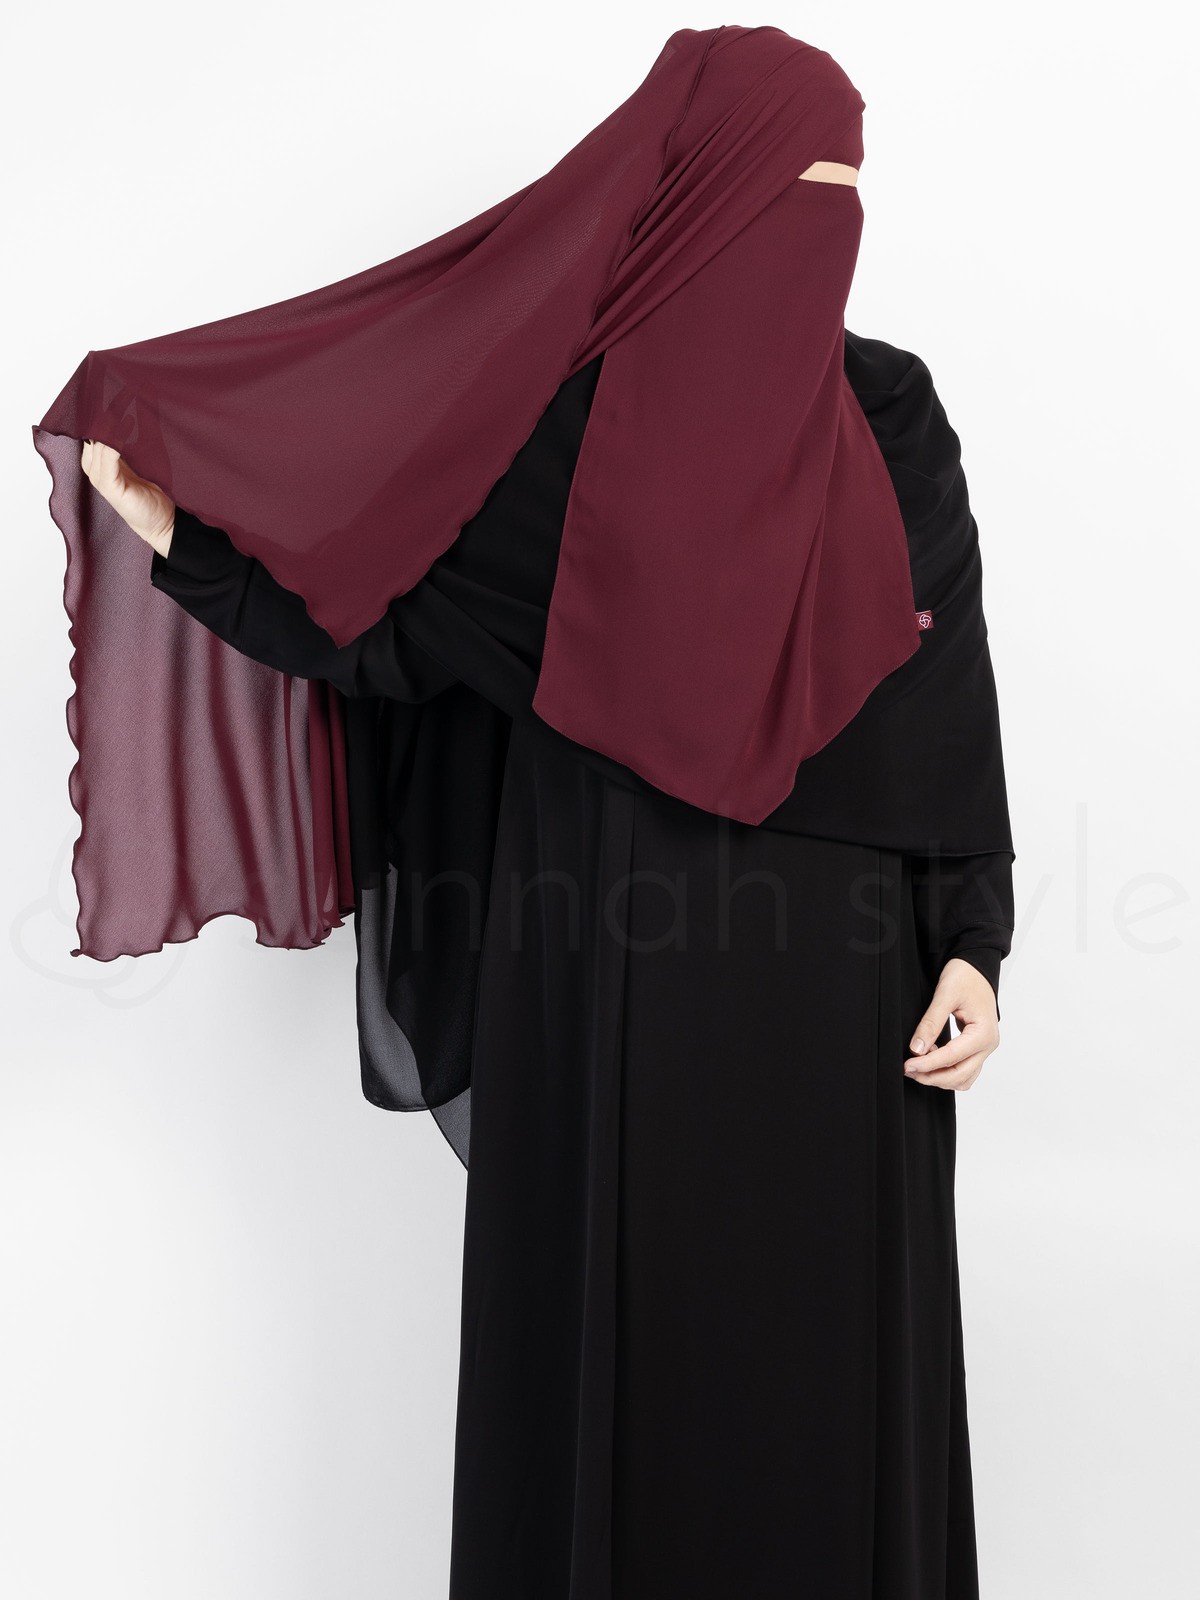 Sunnah Style - Extra Long Diamond Niqab (Burgundy)